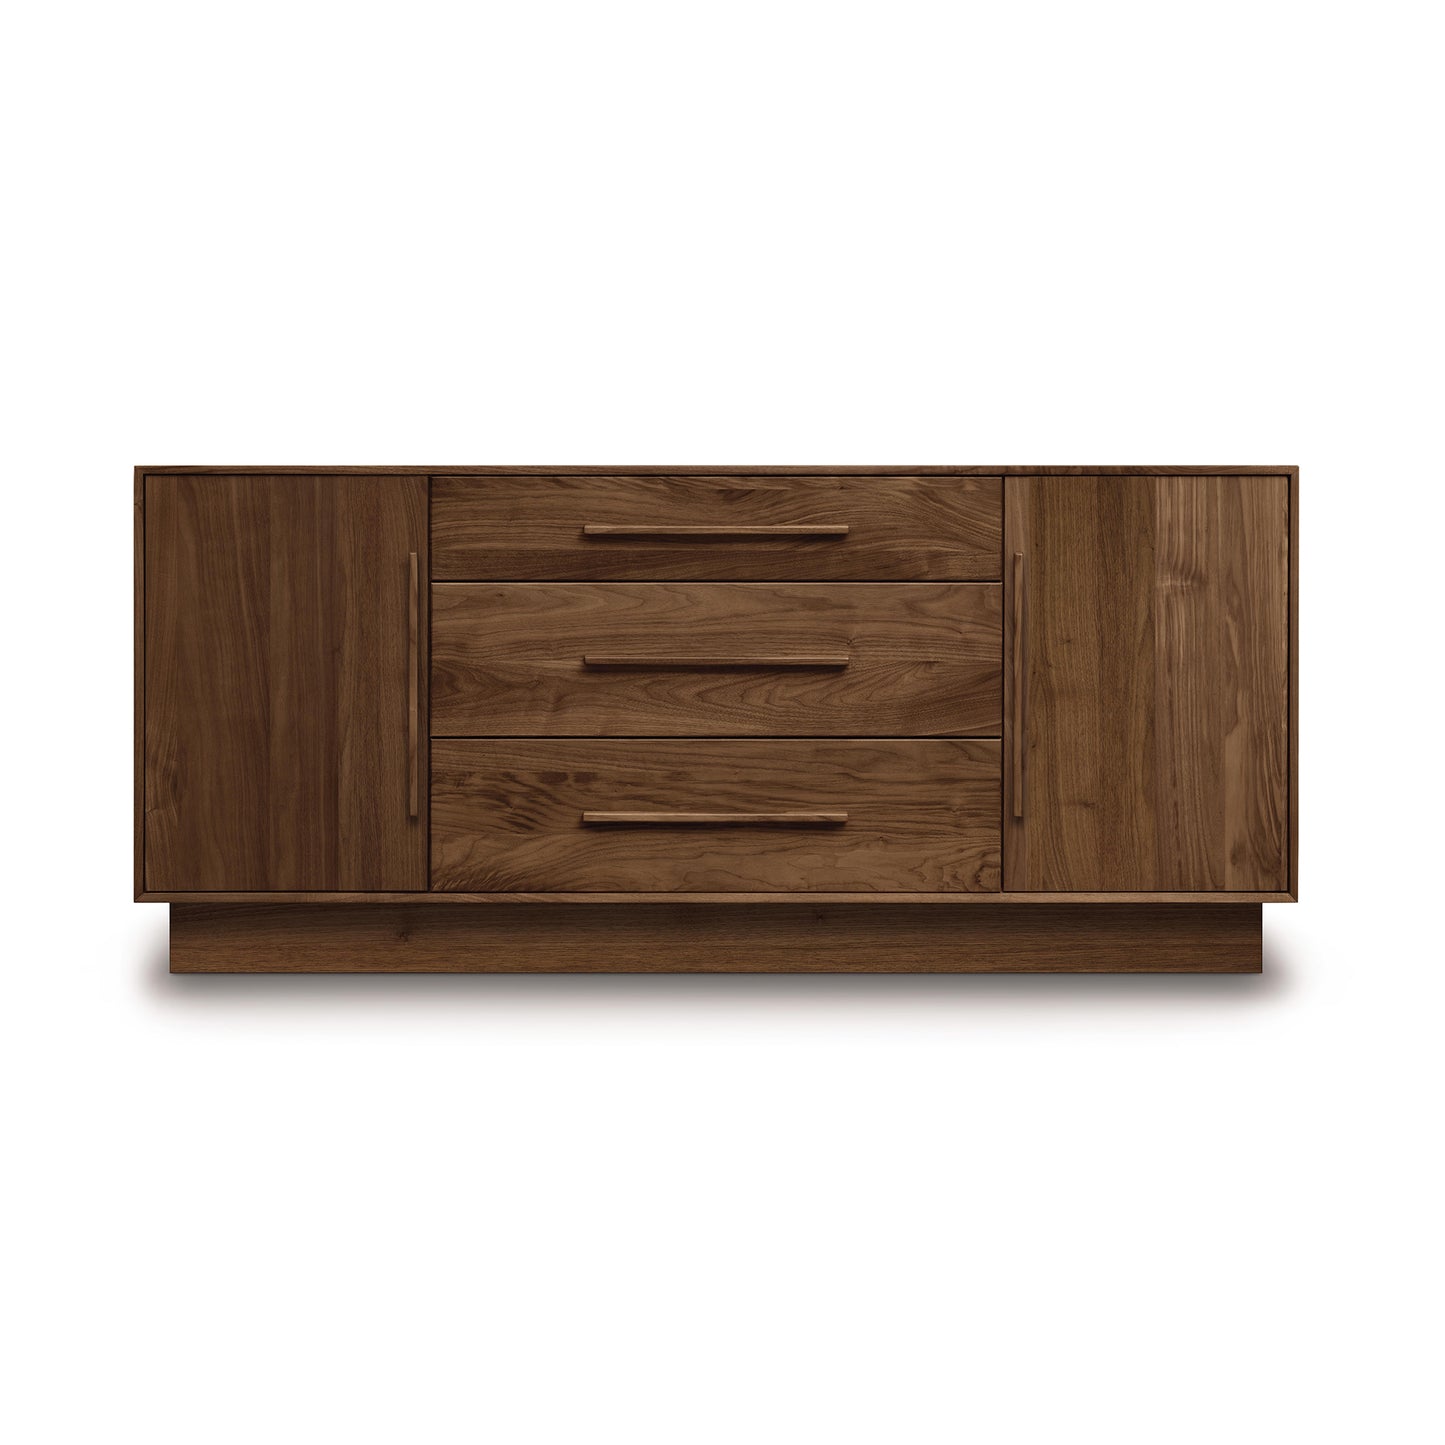 A Copeland Furniture Moduluxe 3-Drawer, 2-Door Dresser -  29" Series.